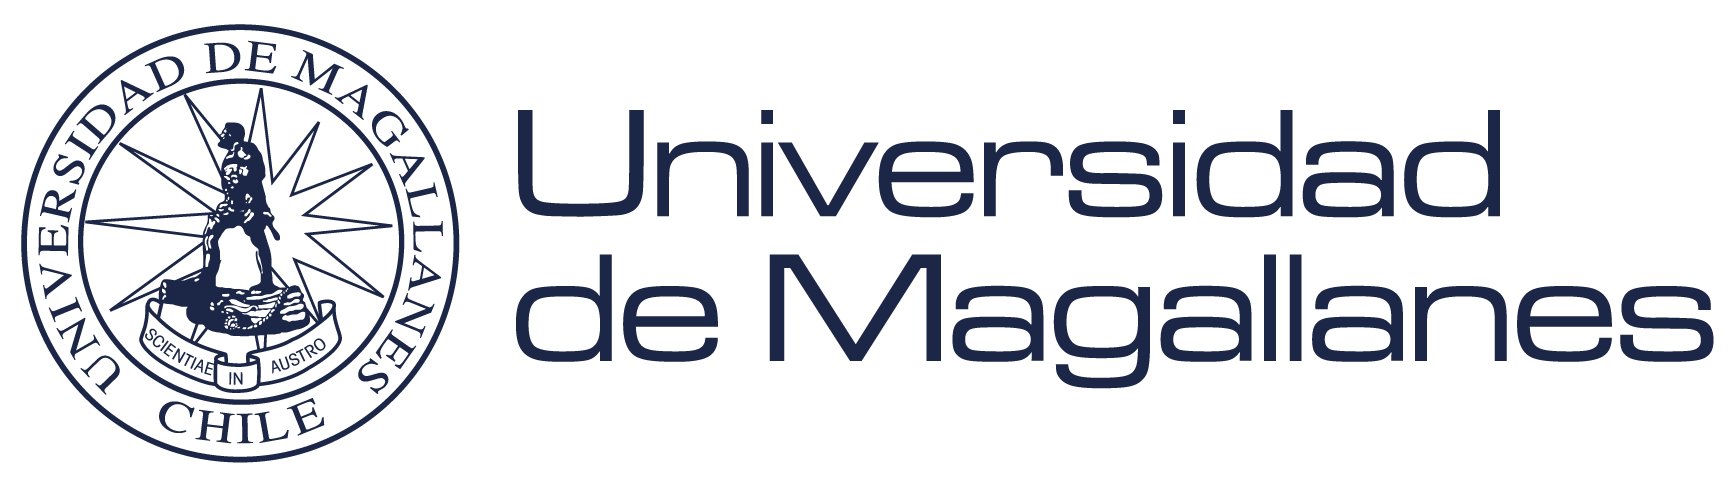 UMAG y Goethe-Institut realizarán conversatorio en torno a obra conceptual “Terra Ignota”